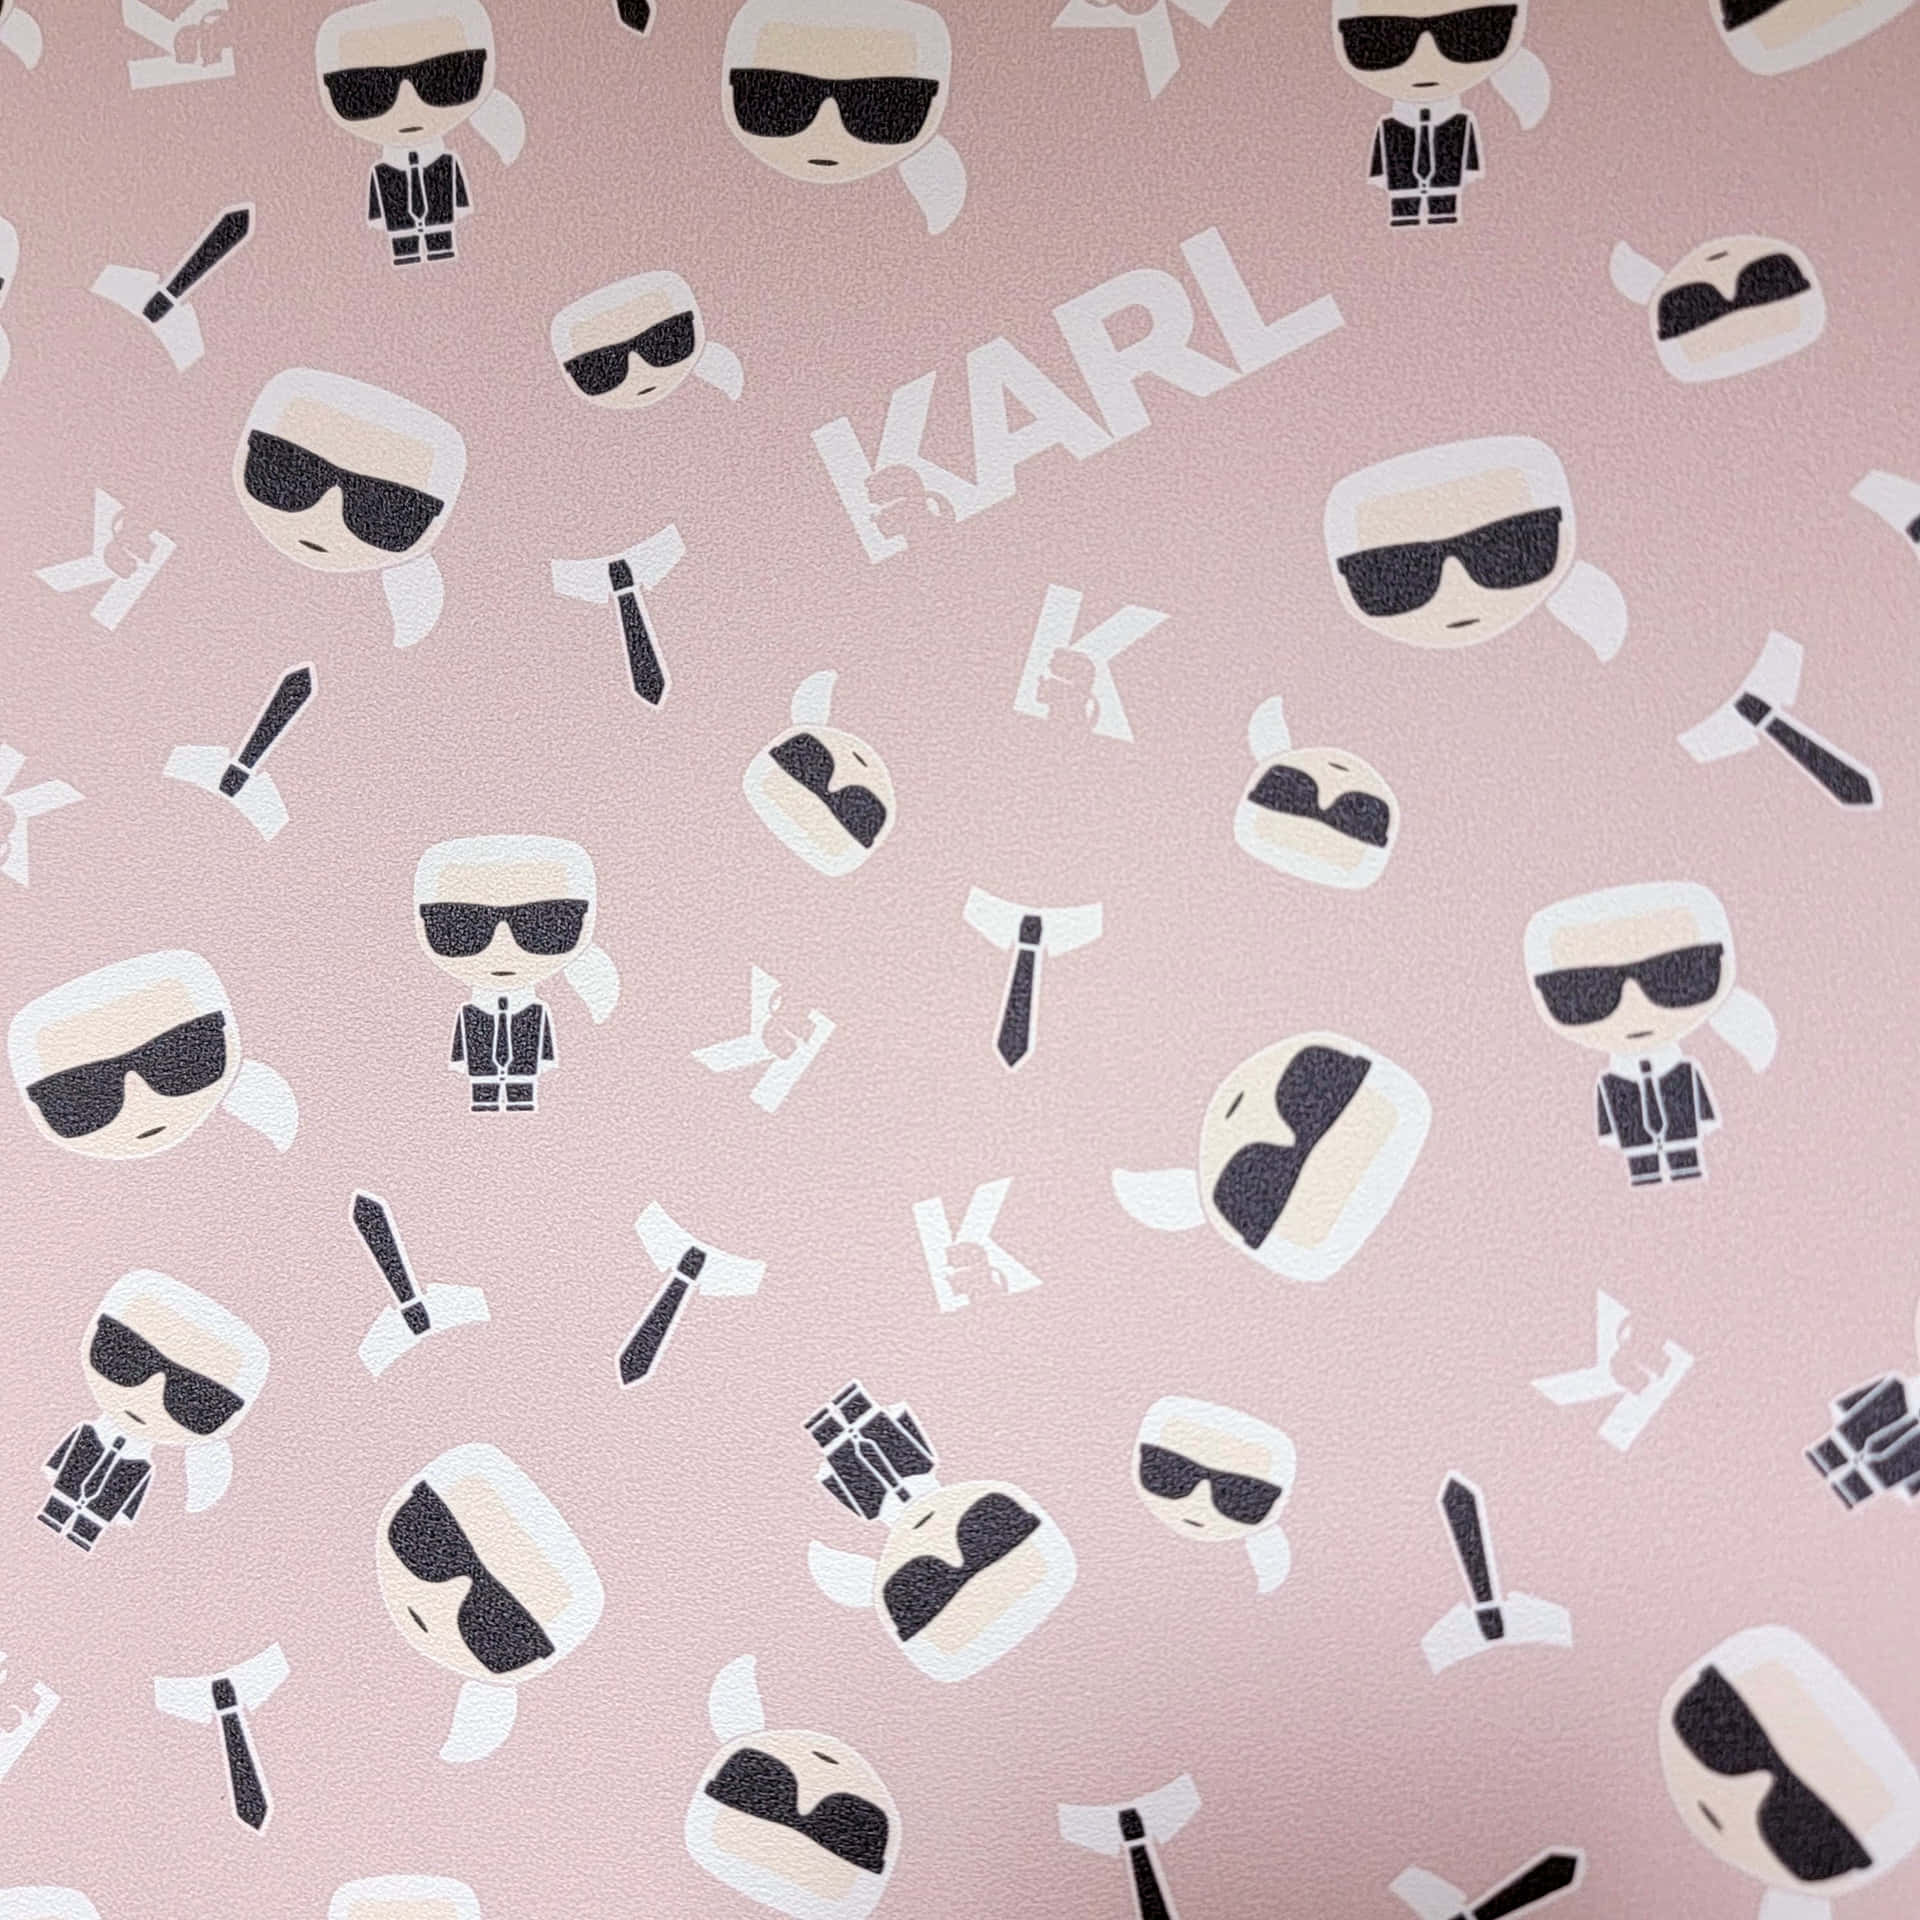 Iconic Designer Karl Lagerfeld Wallpaper